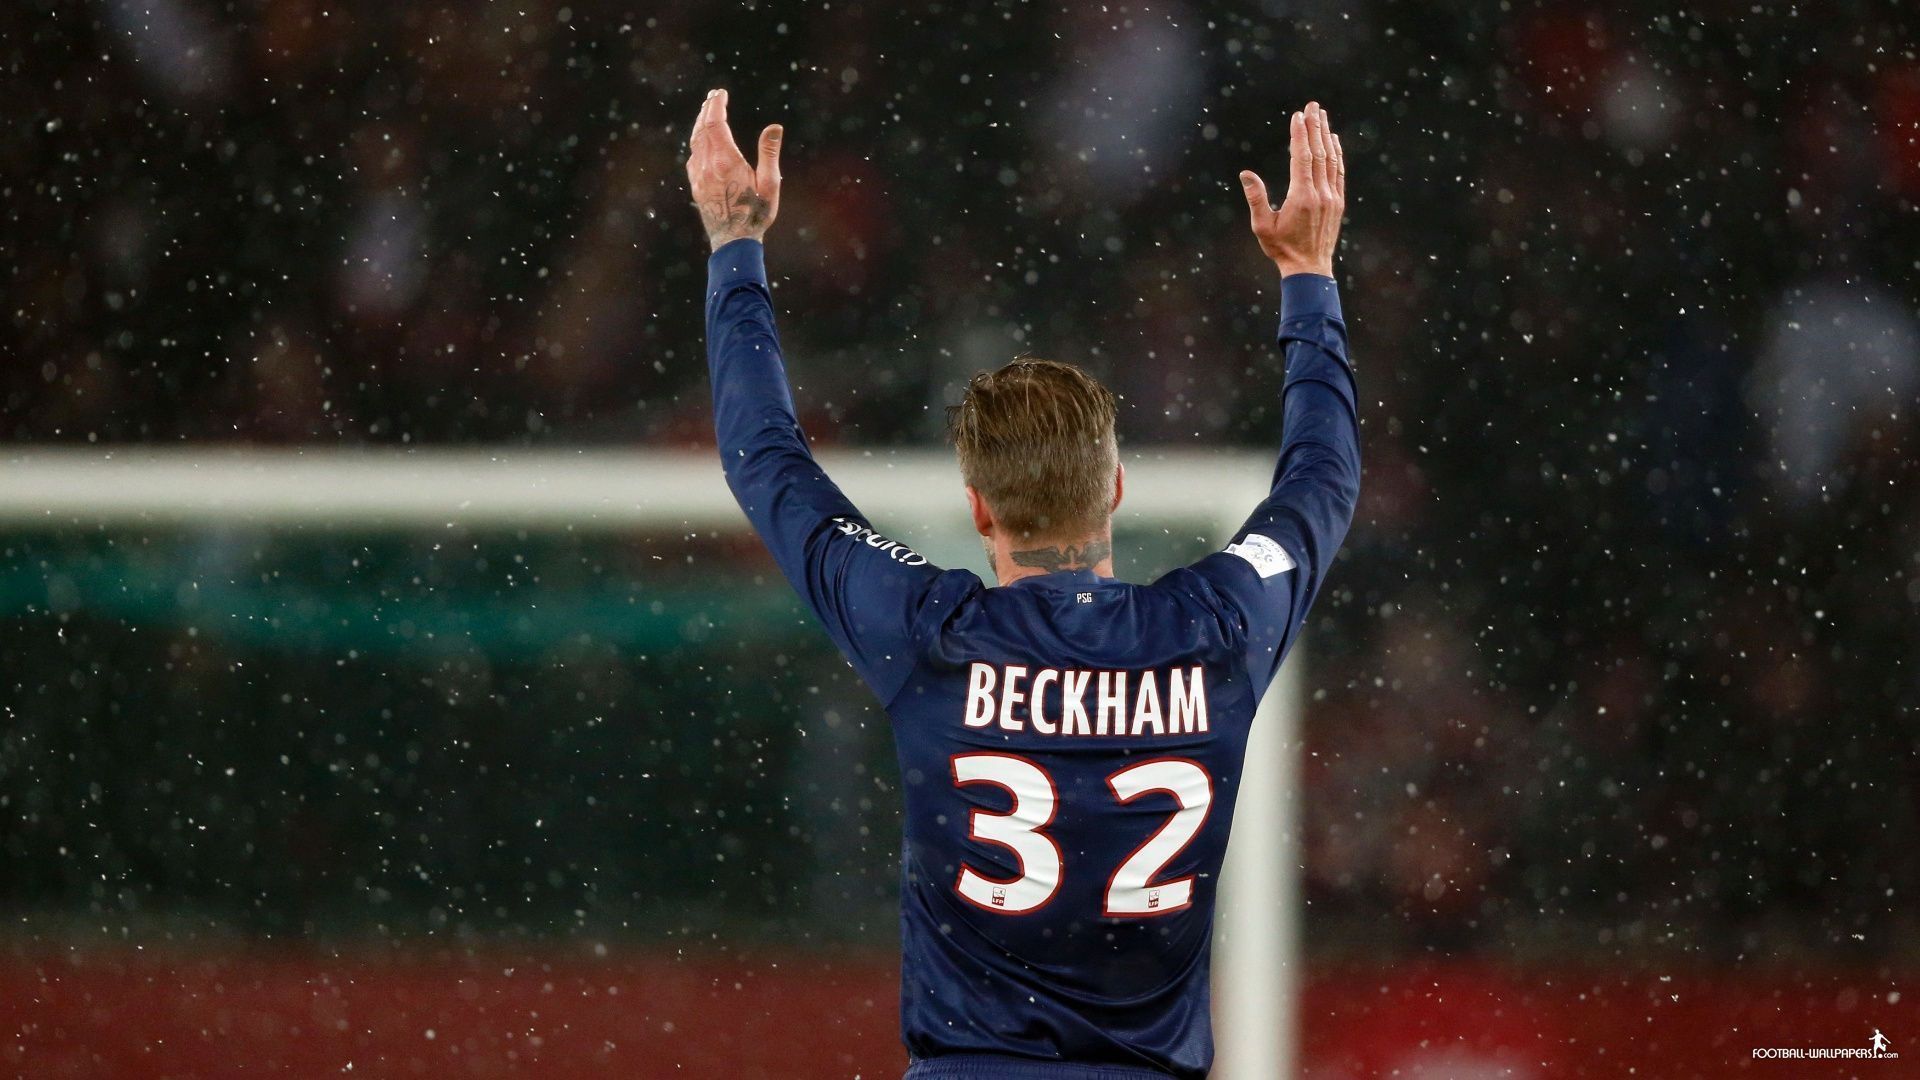 David Beckham Hd 1080p David Beckham Football Backgrounds